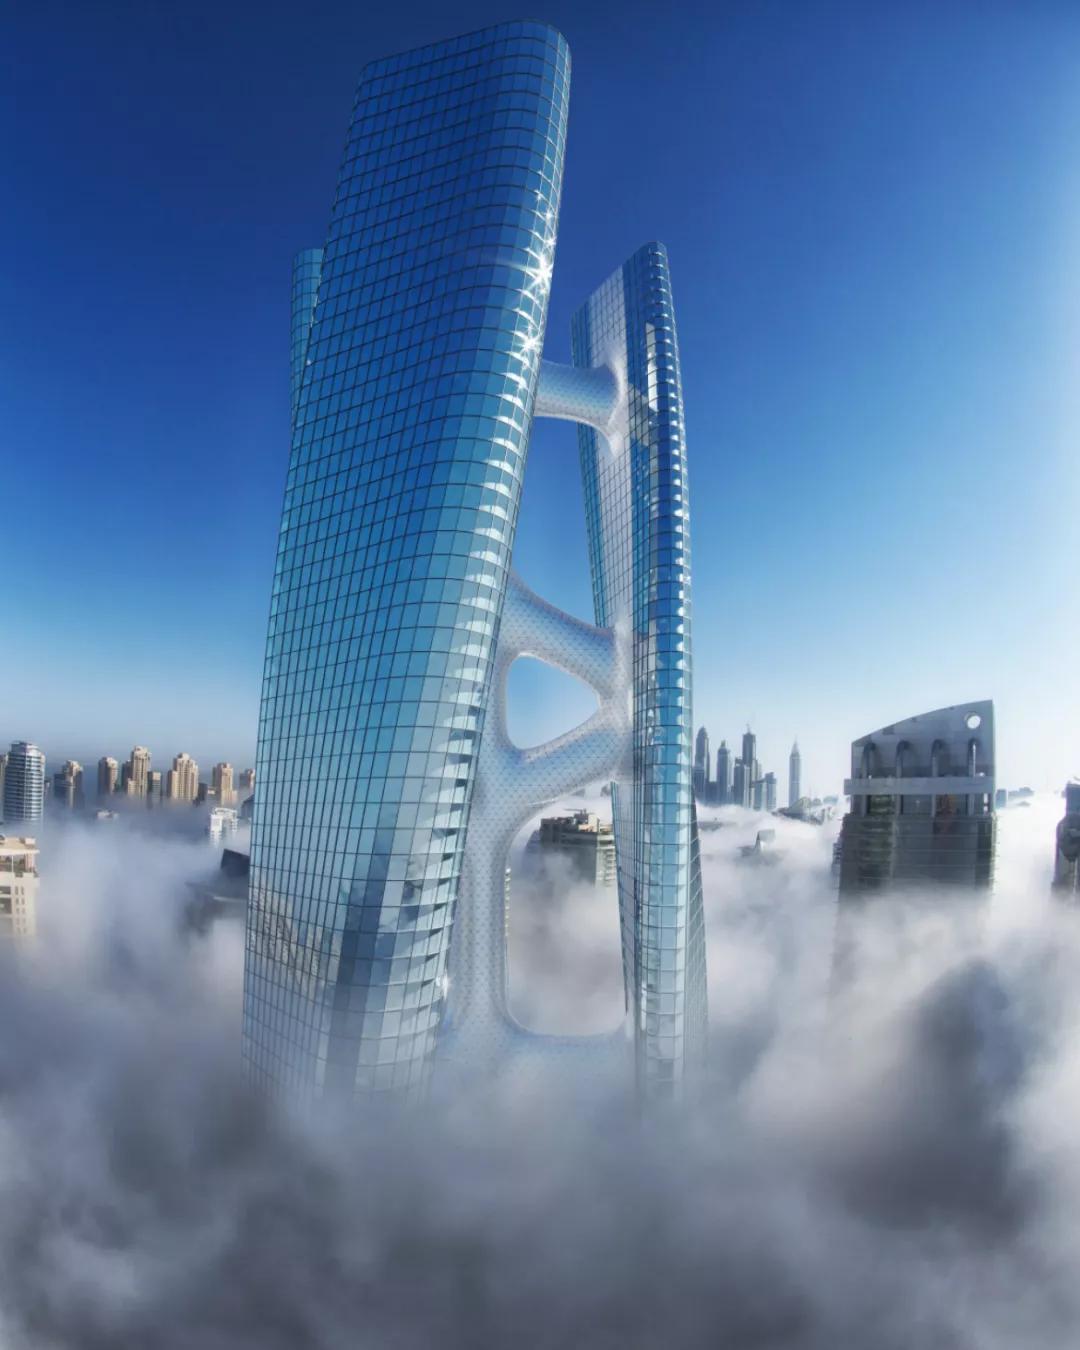 是的,squall tower 大楼能两天带你360度旋转,从不同角度欣赏迪拜